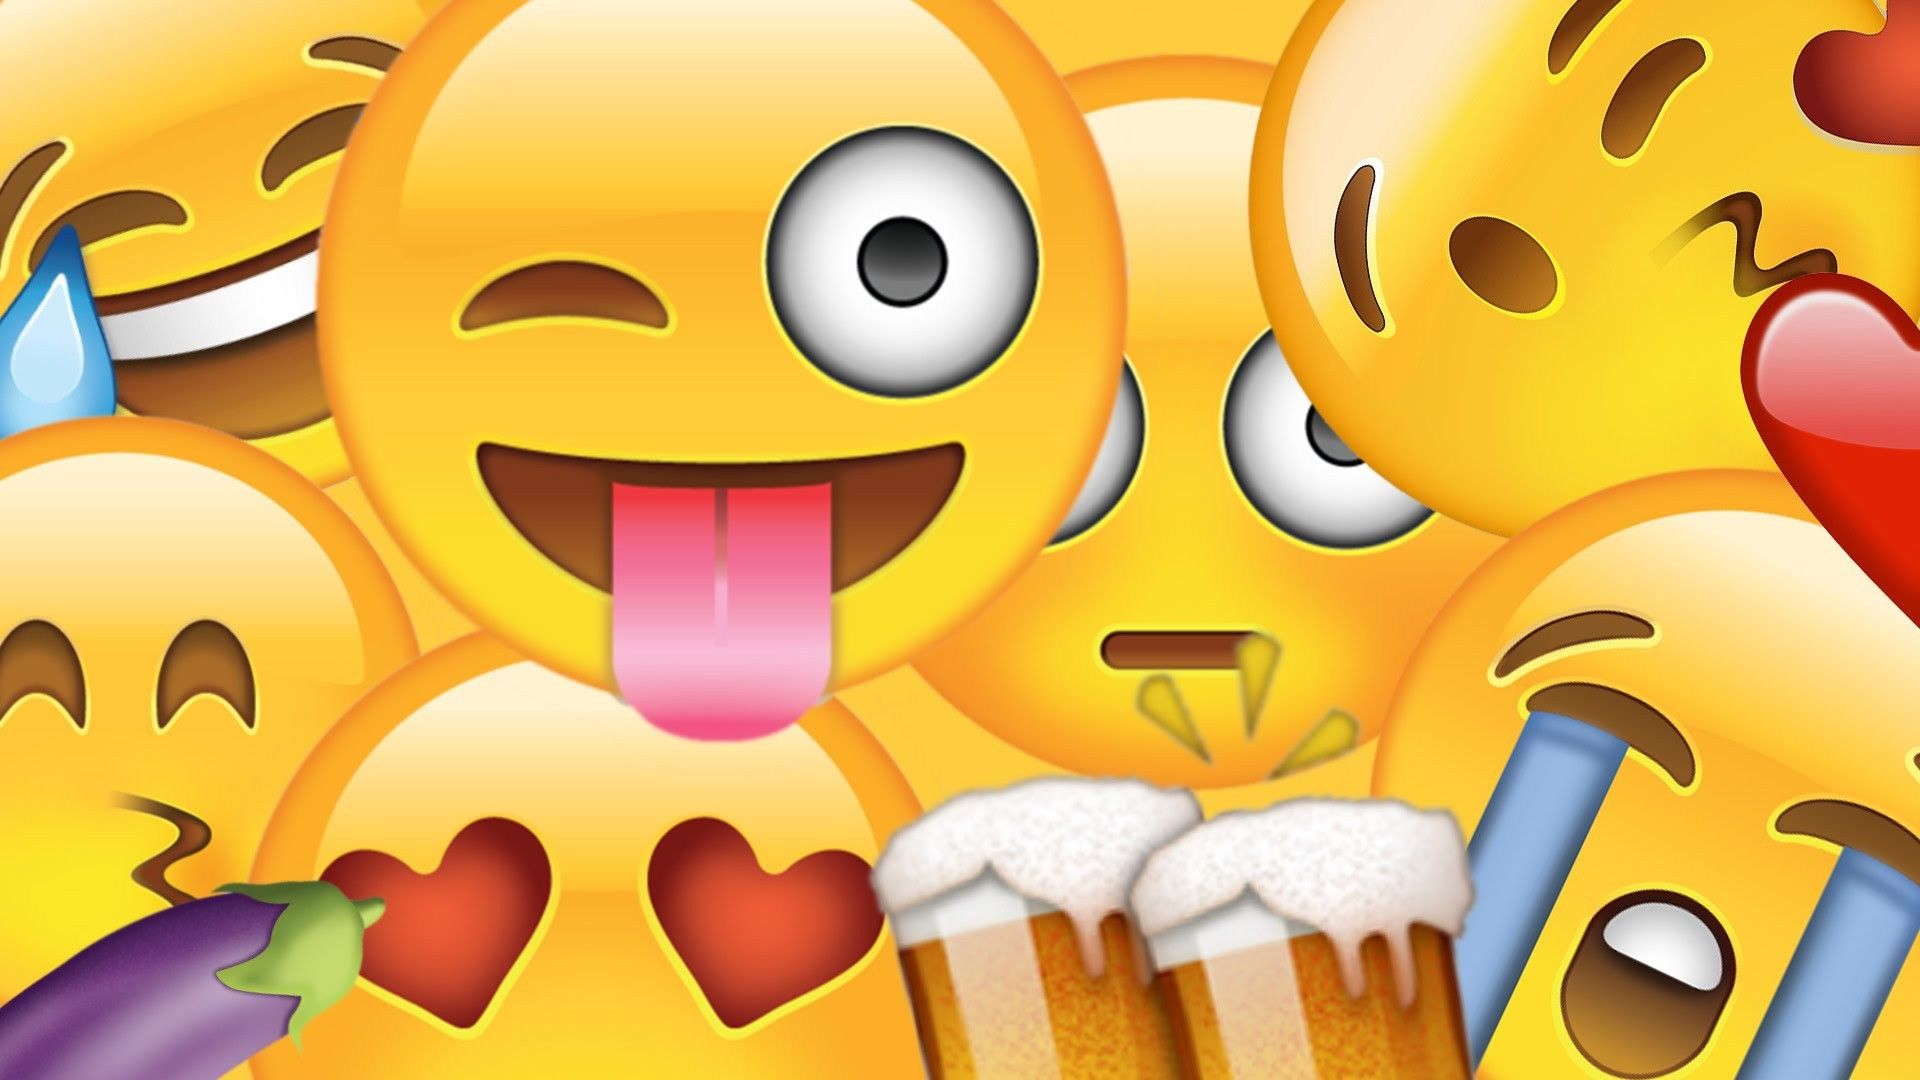 Emoji Desktop Wallpapers - Los mejores fondos de escritorio de Emoji gratis